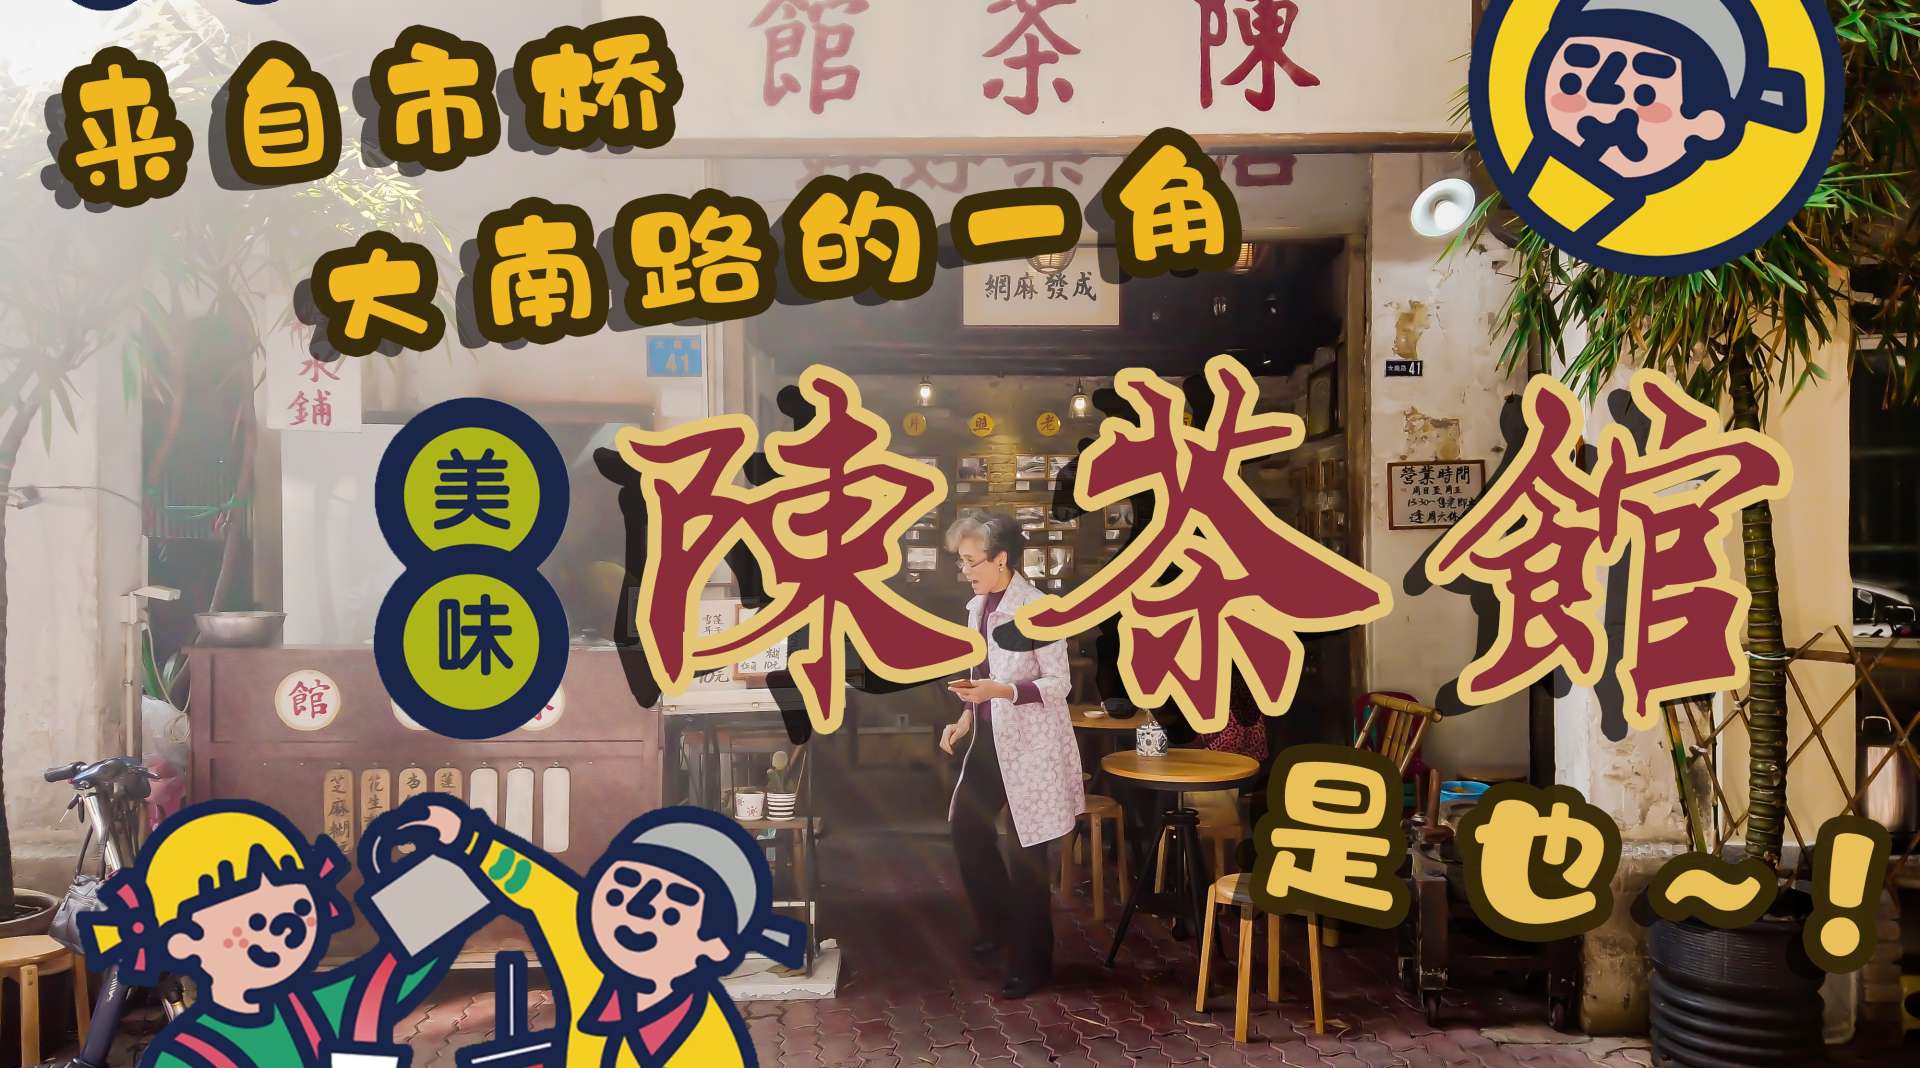 陈茶馆Vlog丨 隐藏在旧城区一角的糖水店